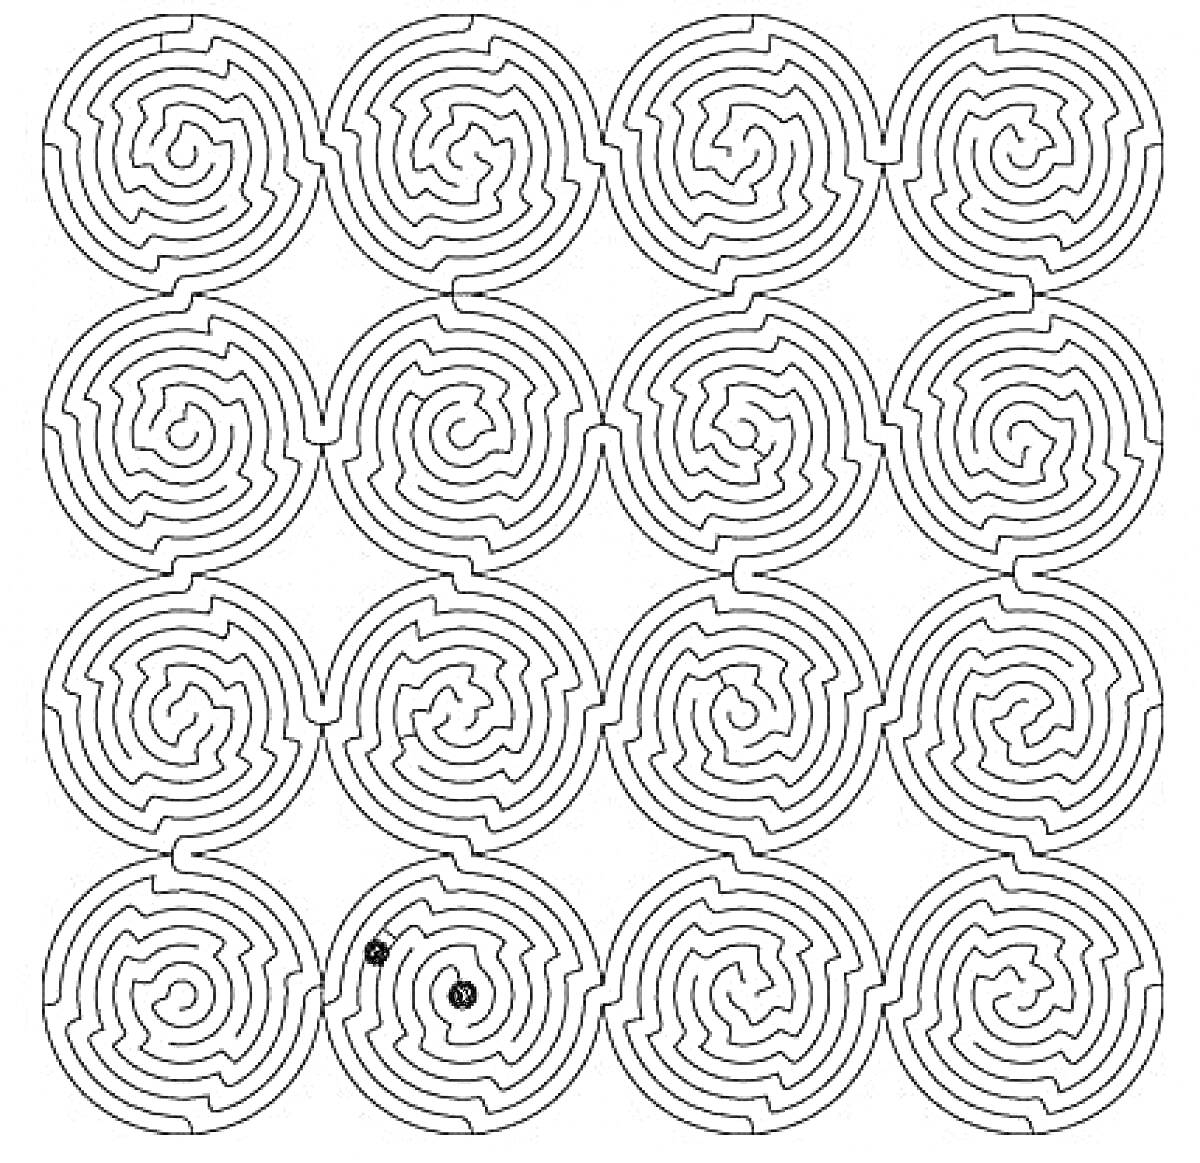 Раскраска Черно-белая раскраска спираль из 16 кругов с лабиринтом